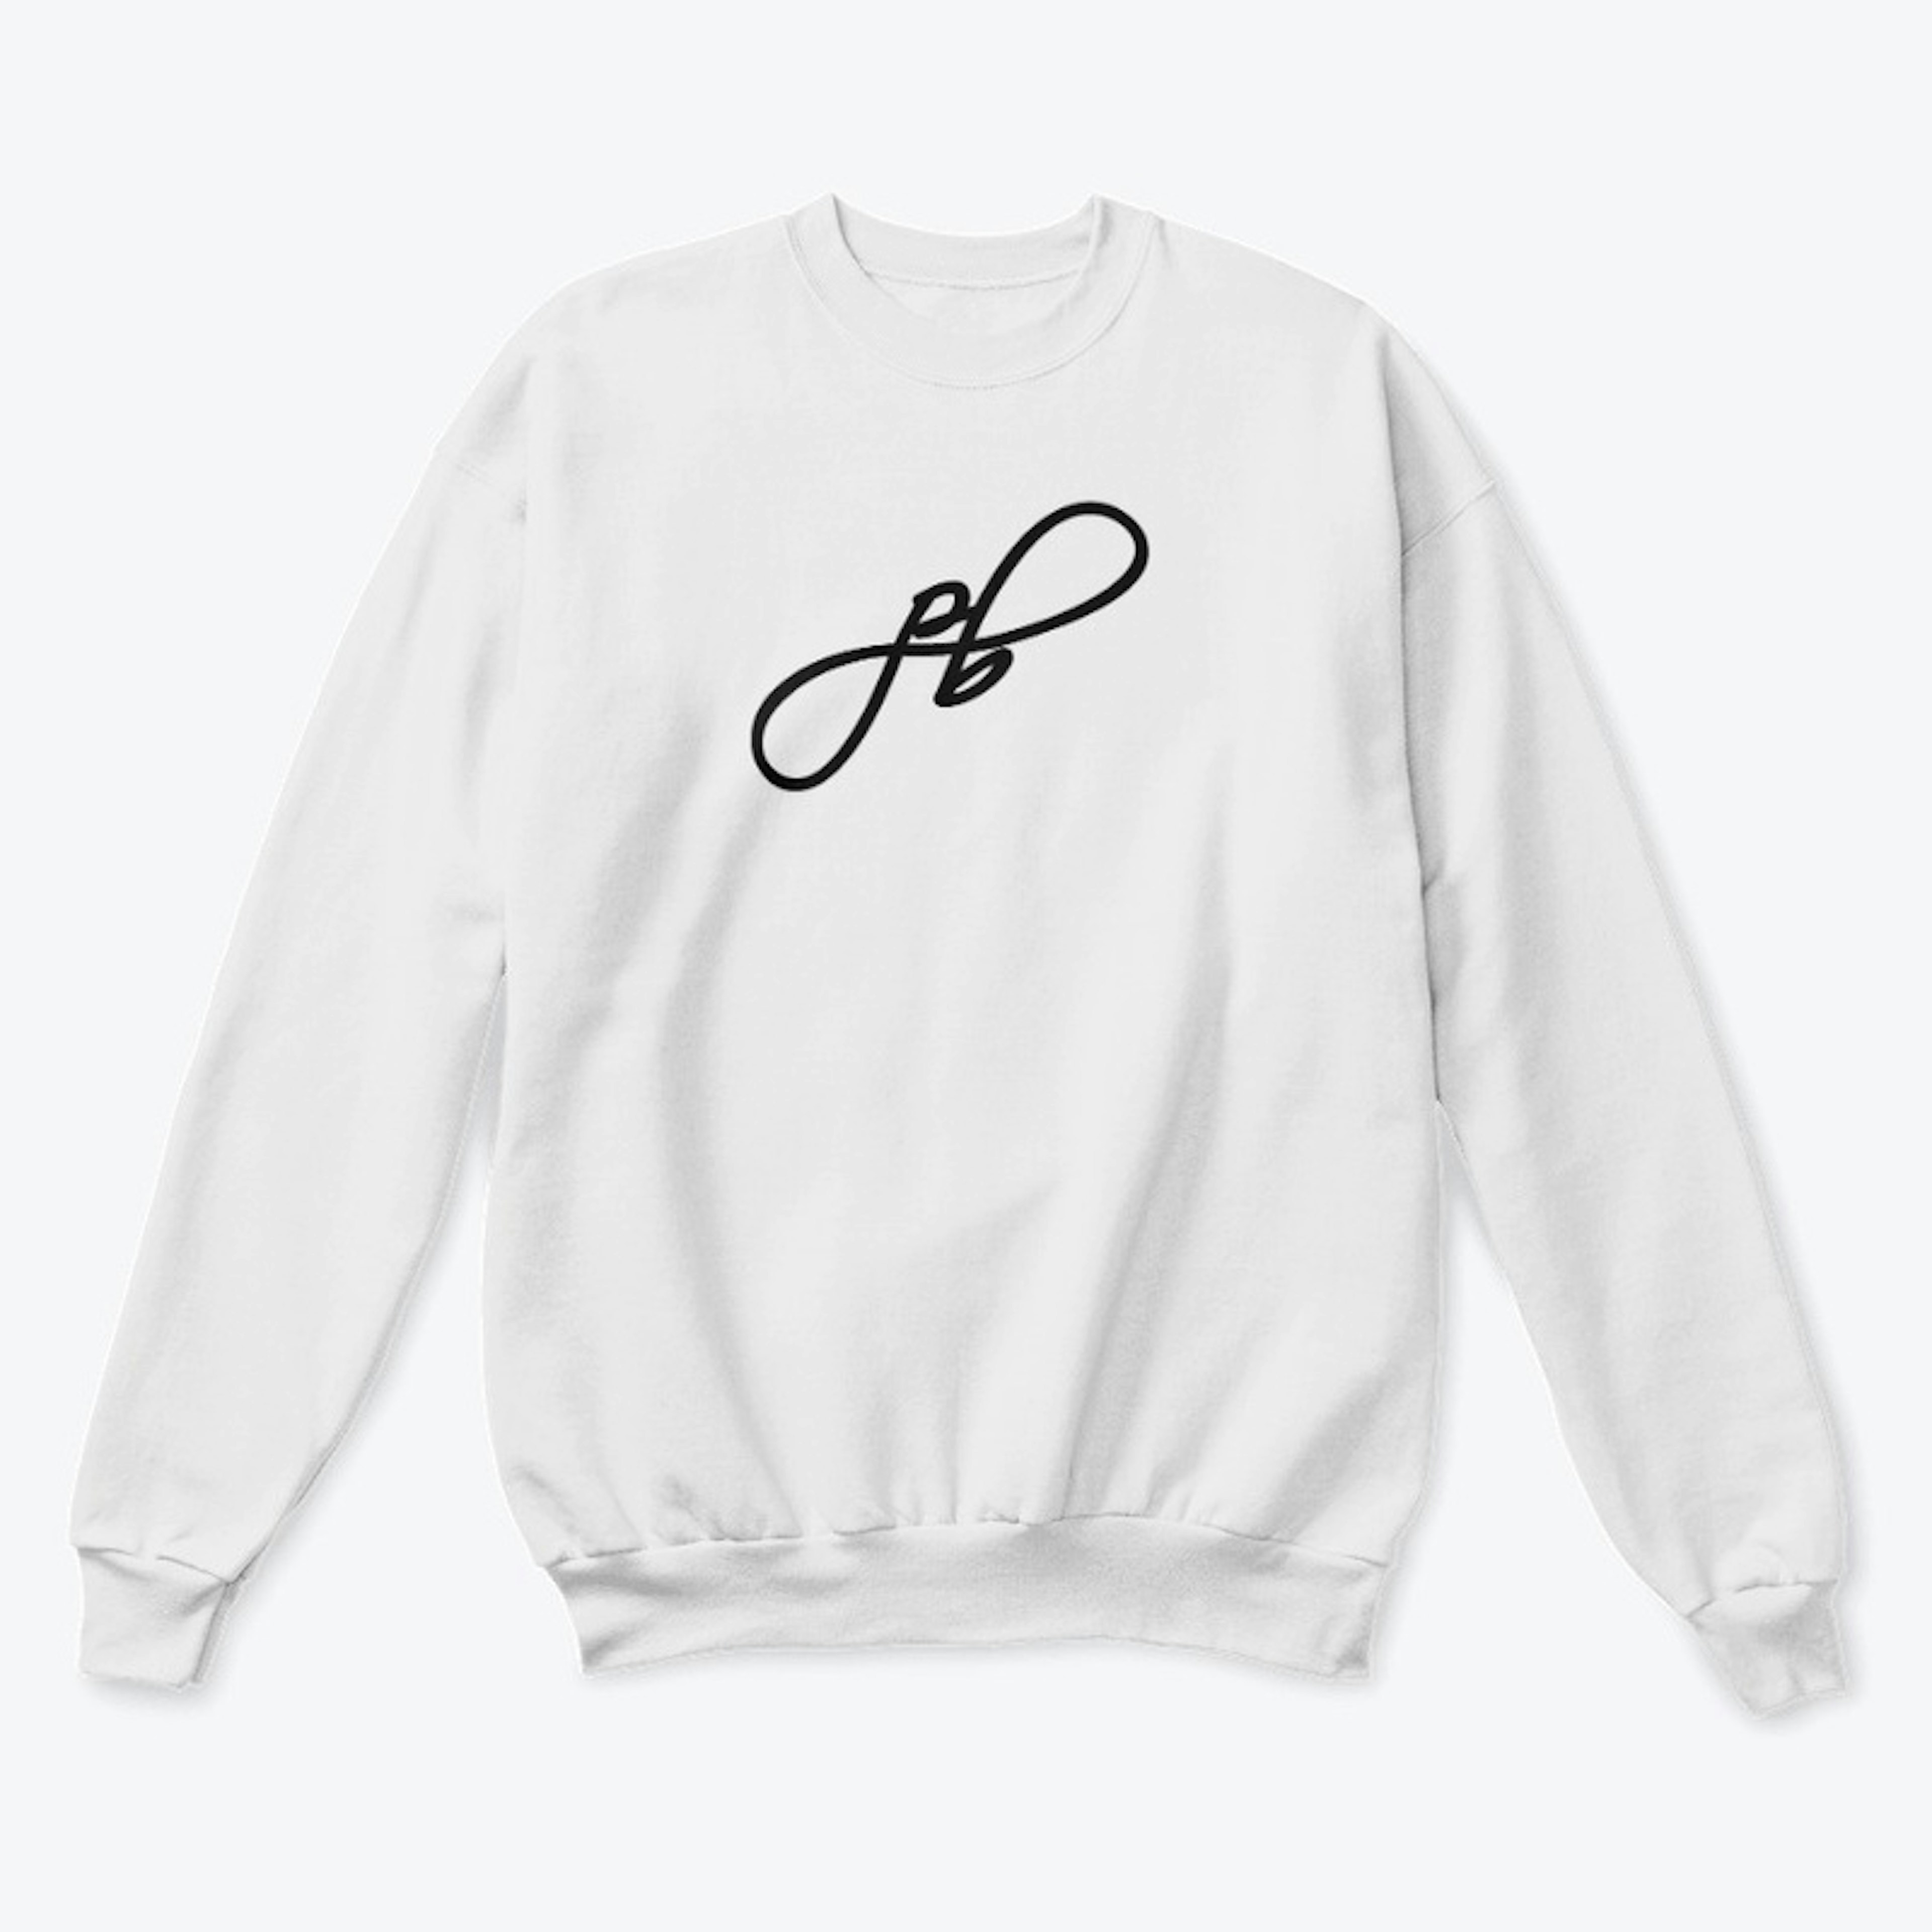 PB Infinity Sweatshirt White